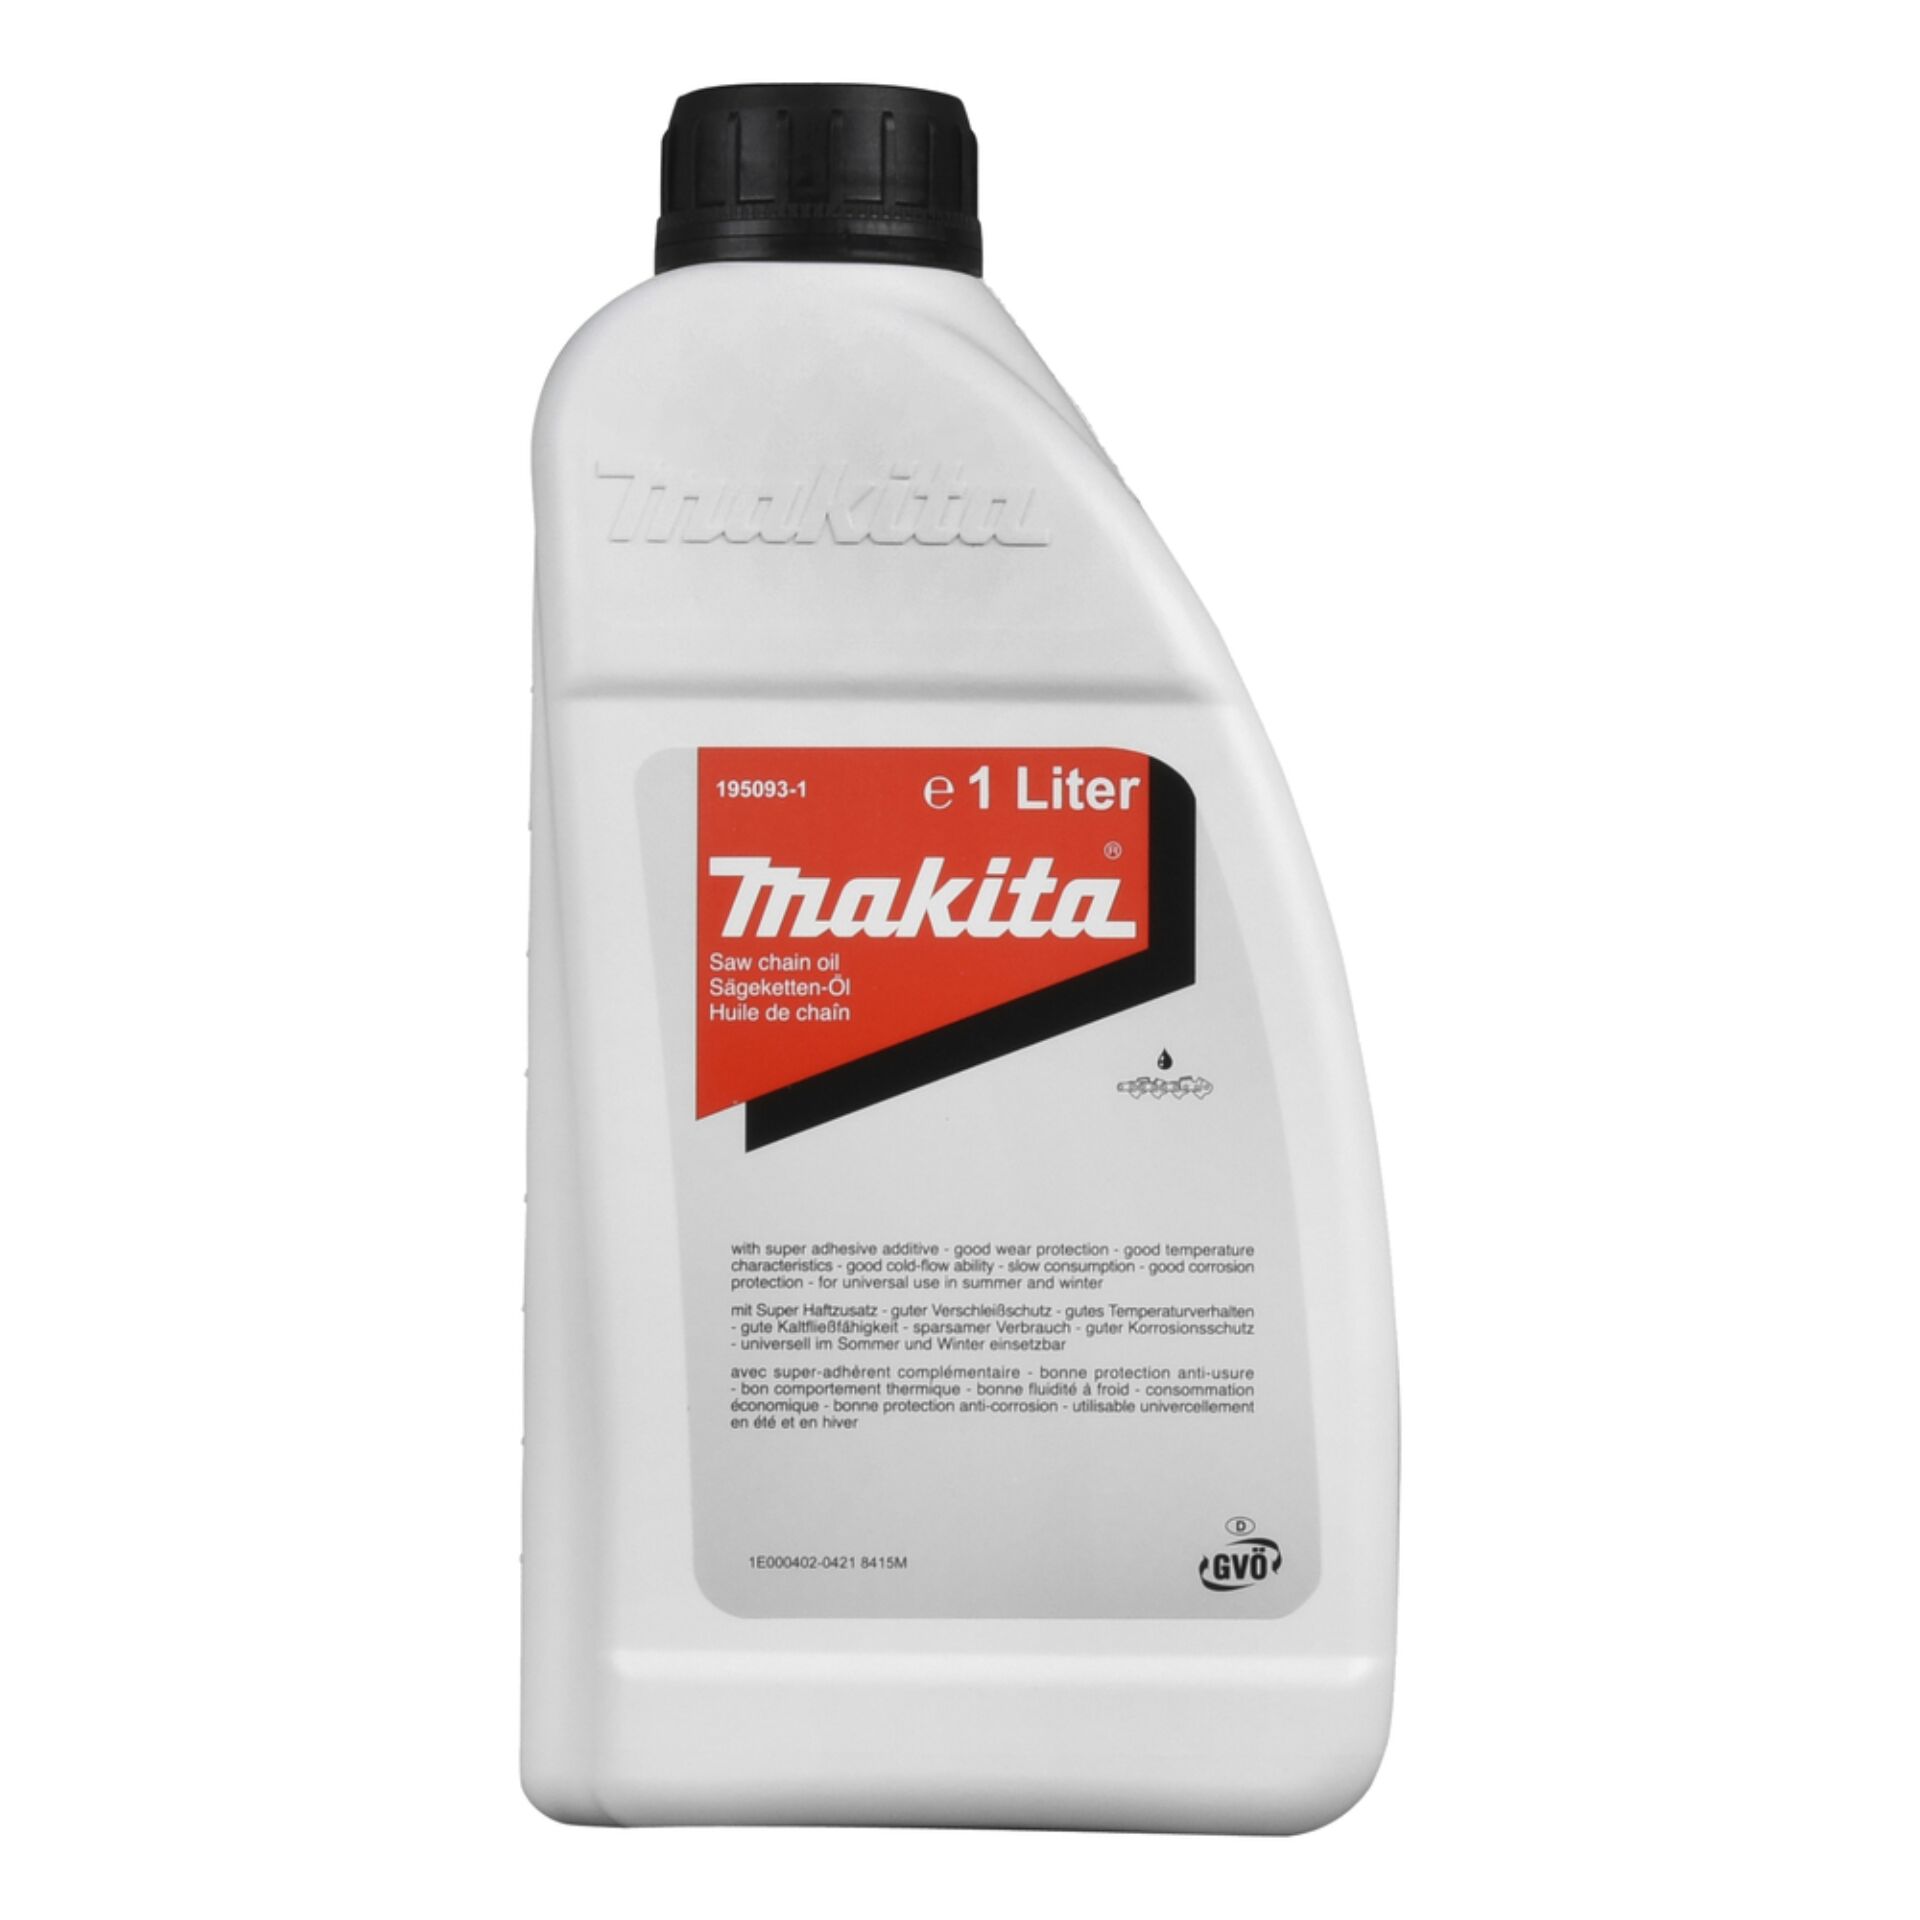 Makita 195093-1 olio per catena sega Mineral+ 1l